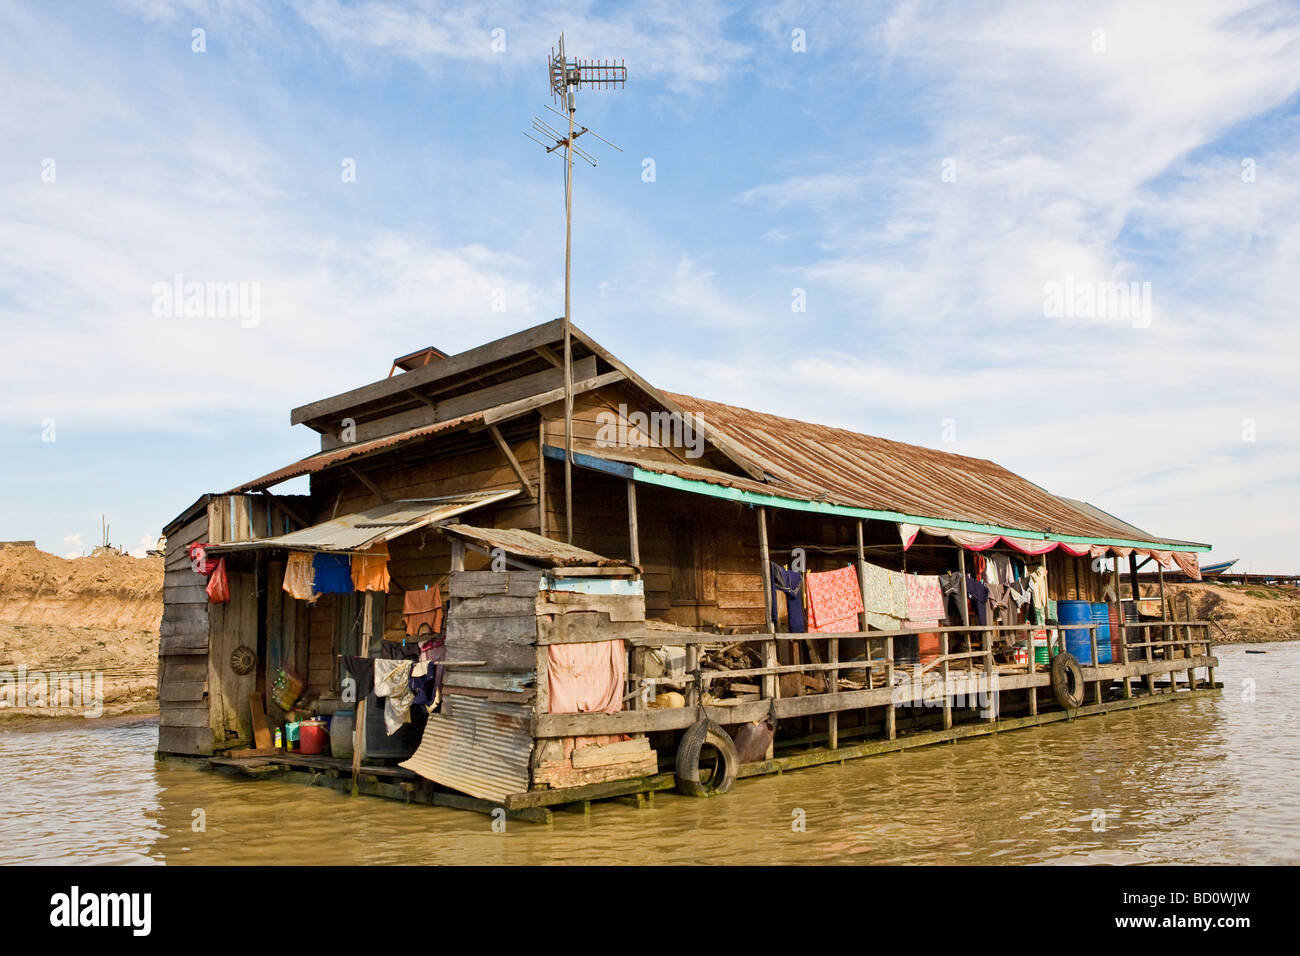 Une maison flottante sur le lac Tong Sap au Cambodge Banque D'Images